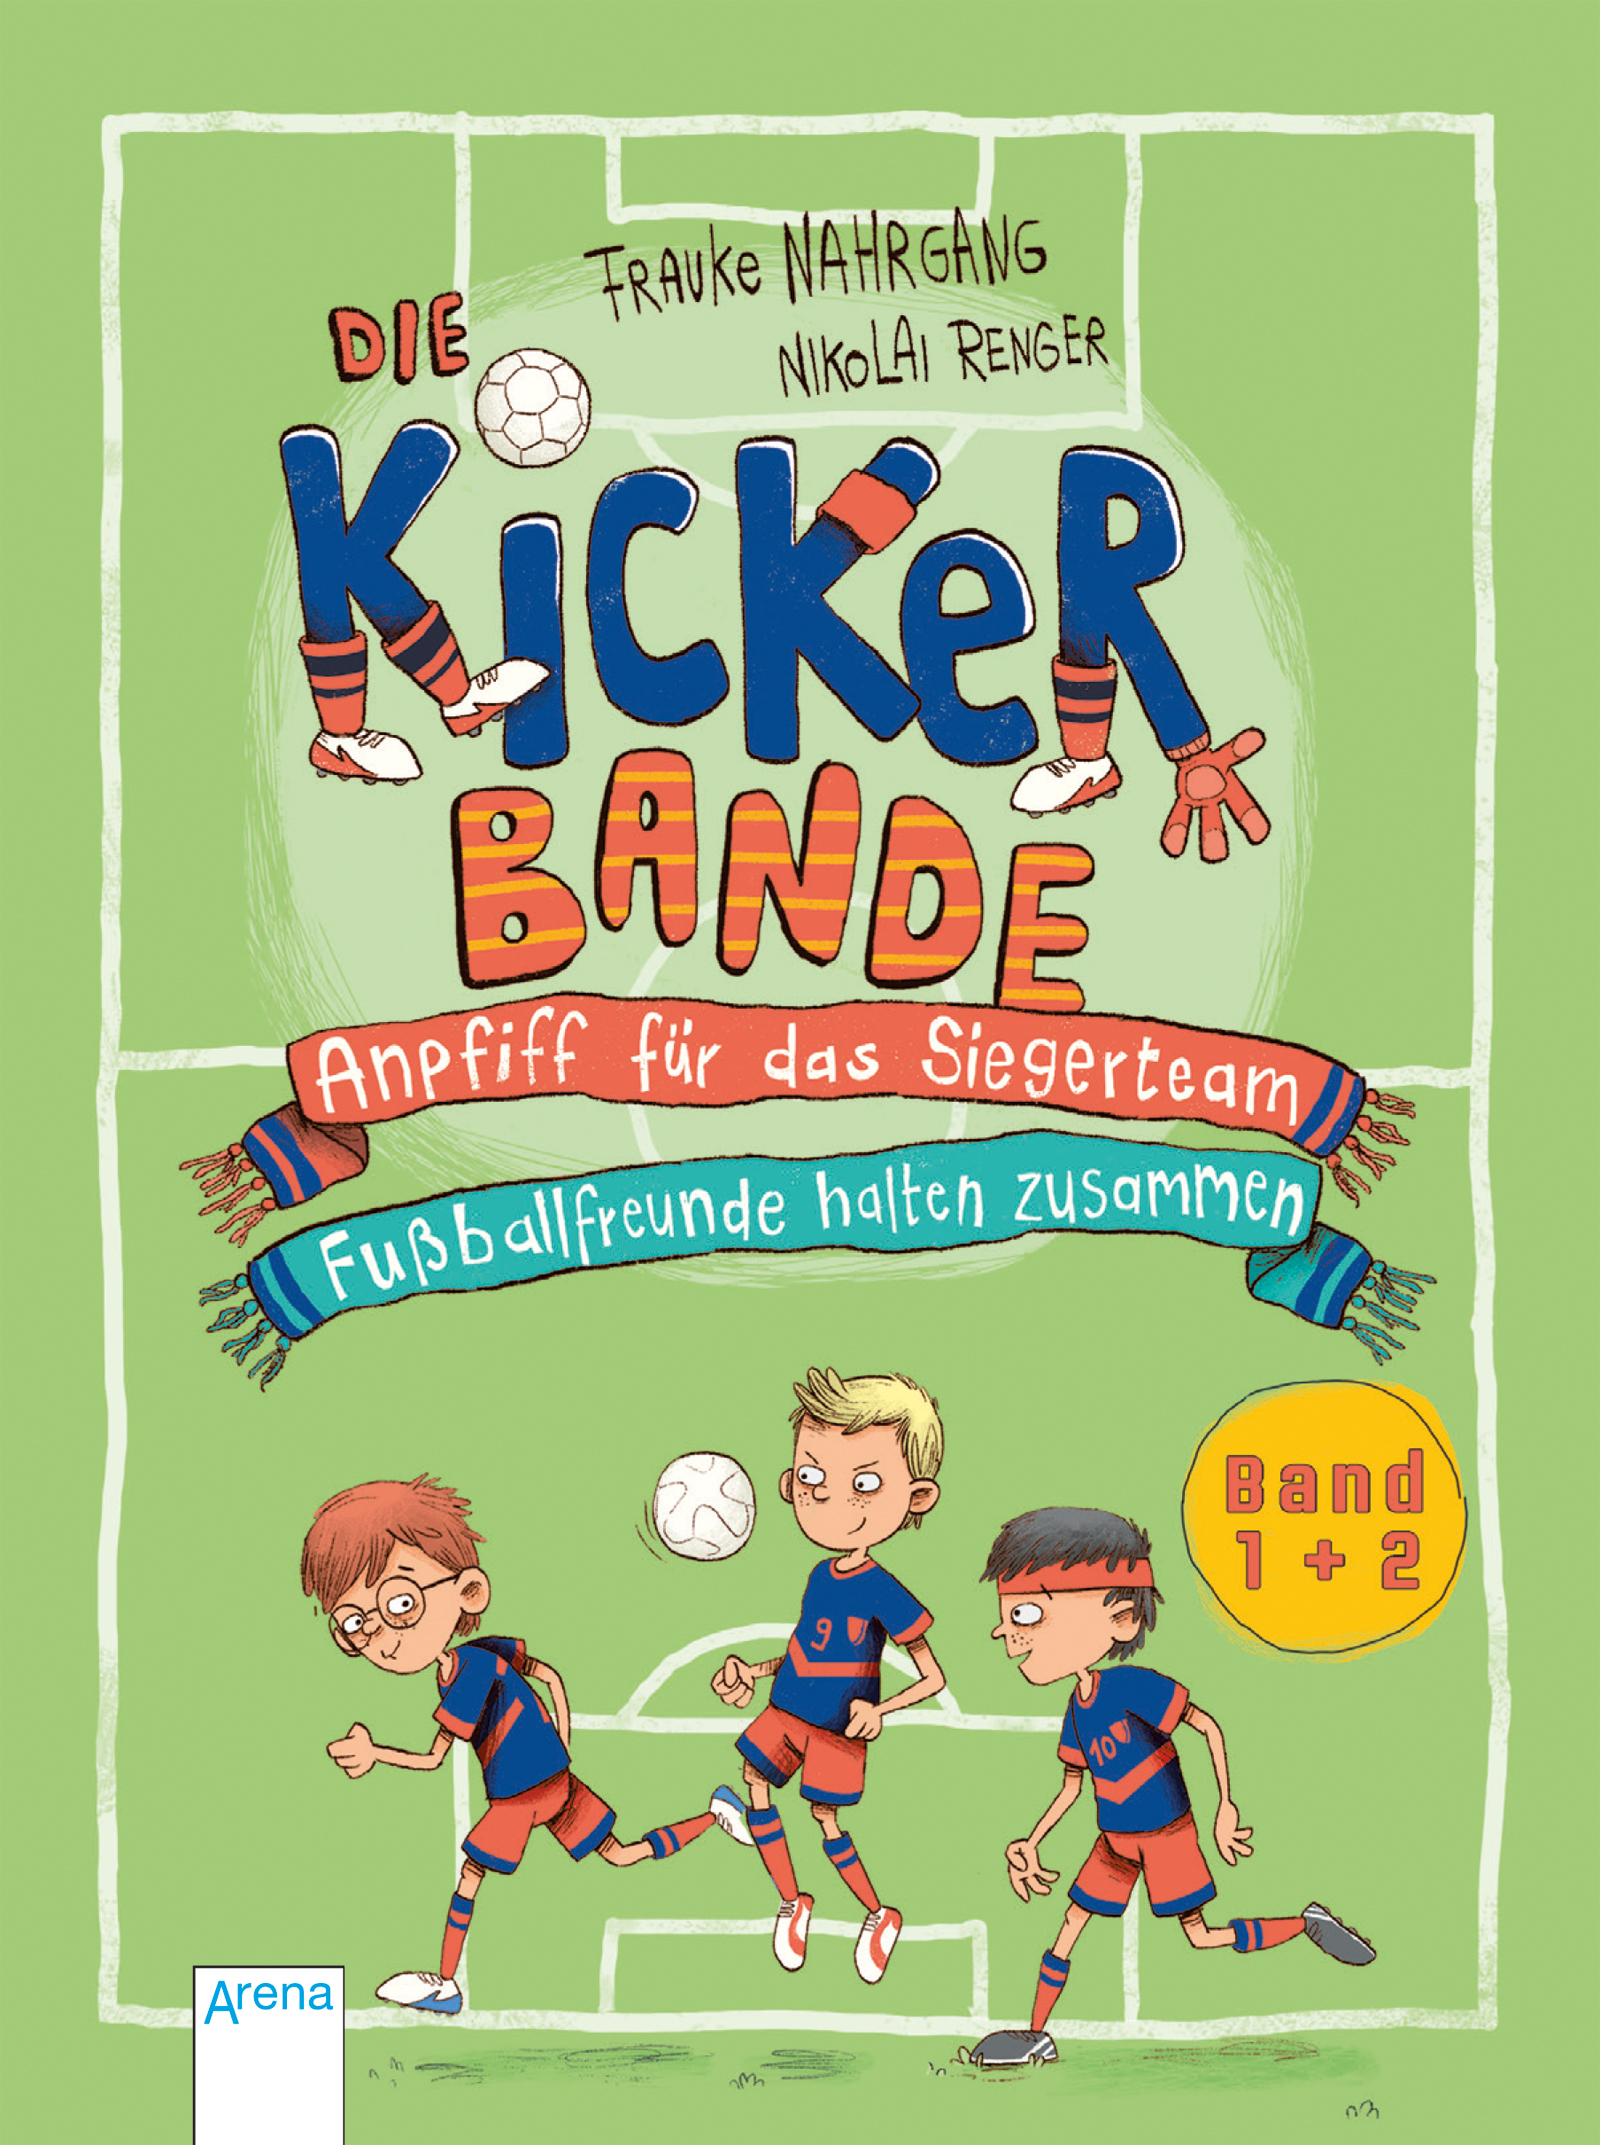 Frauke NahrgangDie Kickerbande – Anpfiff für das Siegerteam. Fußballfreunde halten zusammen (Band 1+2)